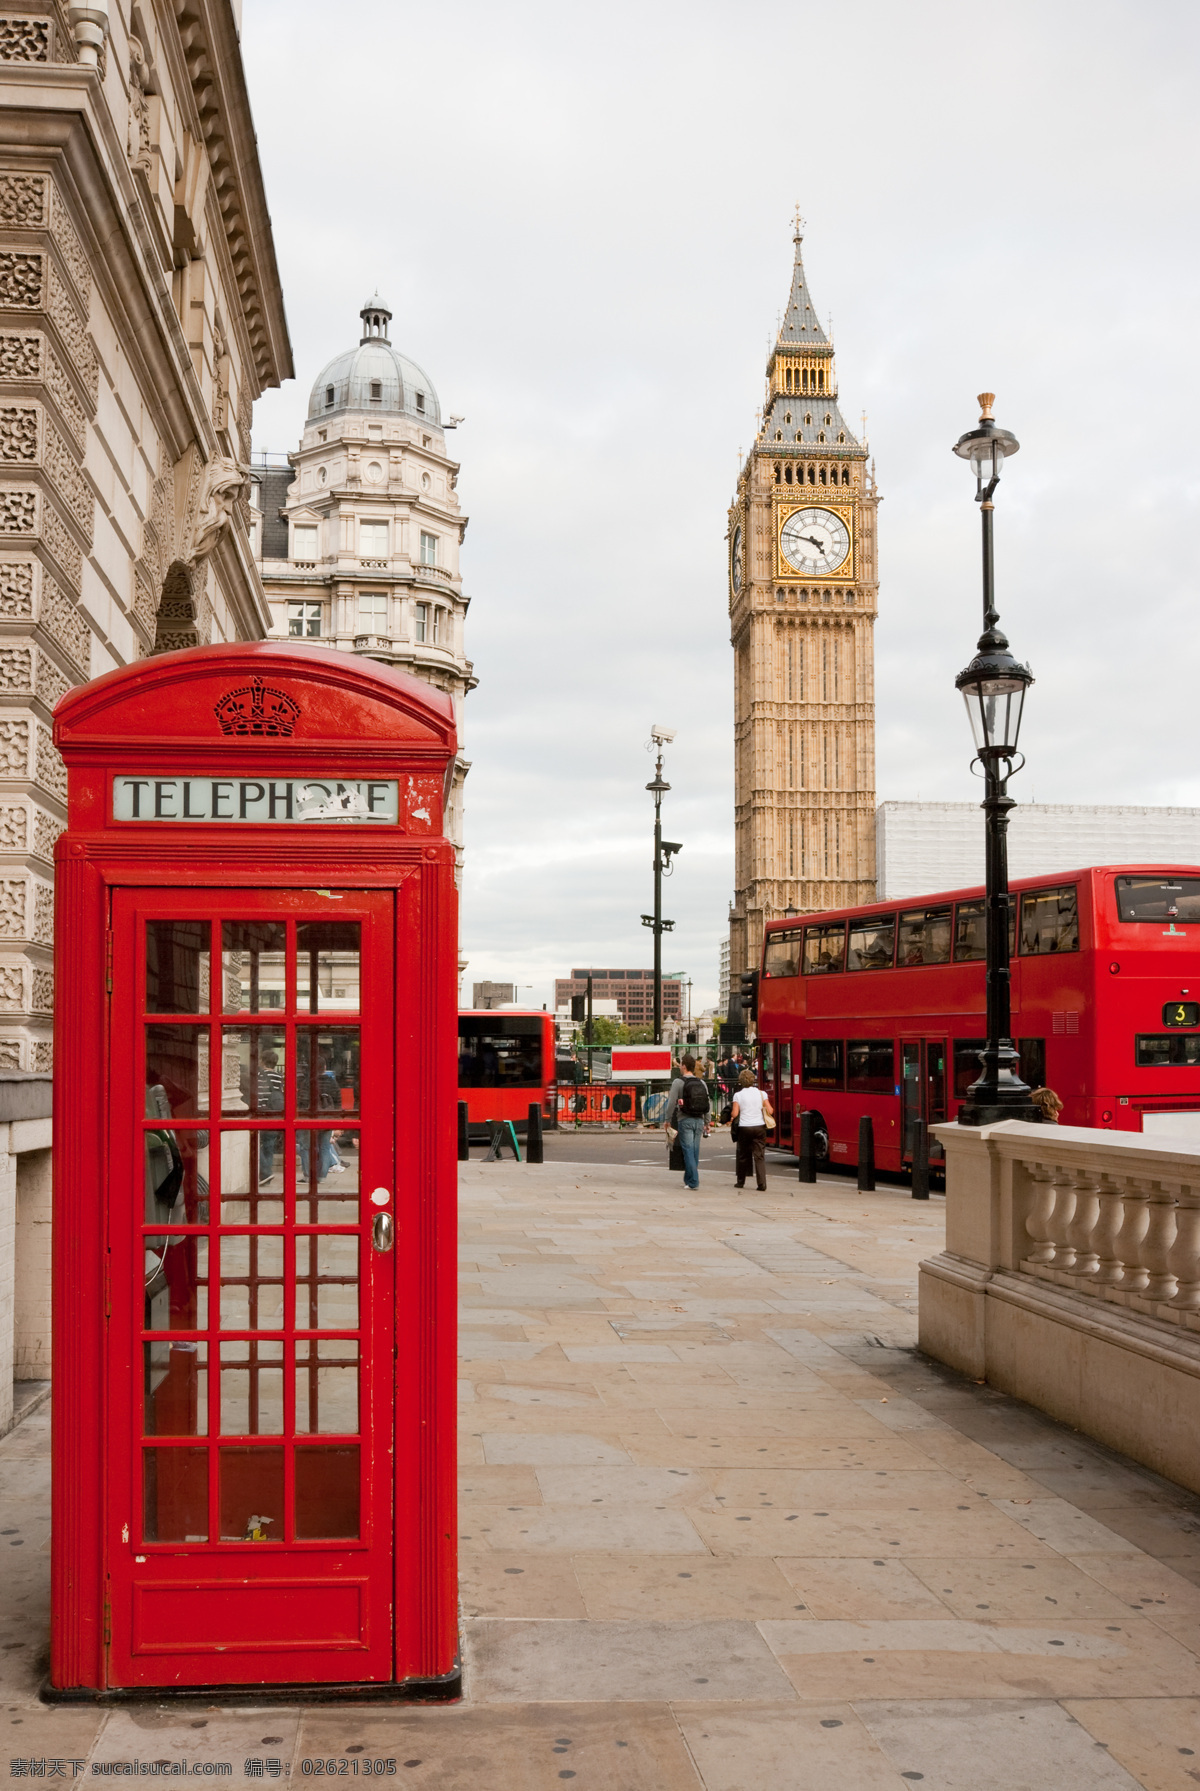 英国 风情 伦敦街道 伦敦风景 欧美风格 英国风景 名胜古迹 外国风景 旅游图片 电话亭 双层巴士 钟楼 风景名胜 风景图片